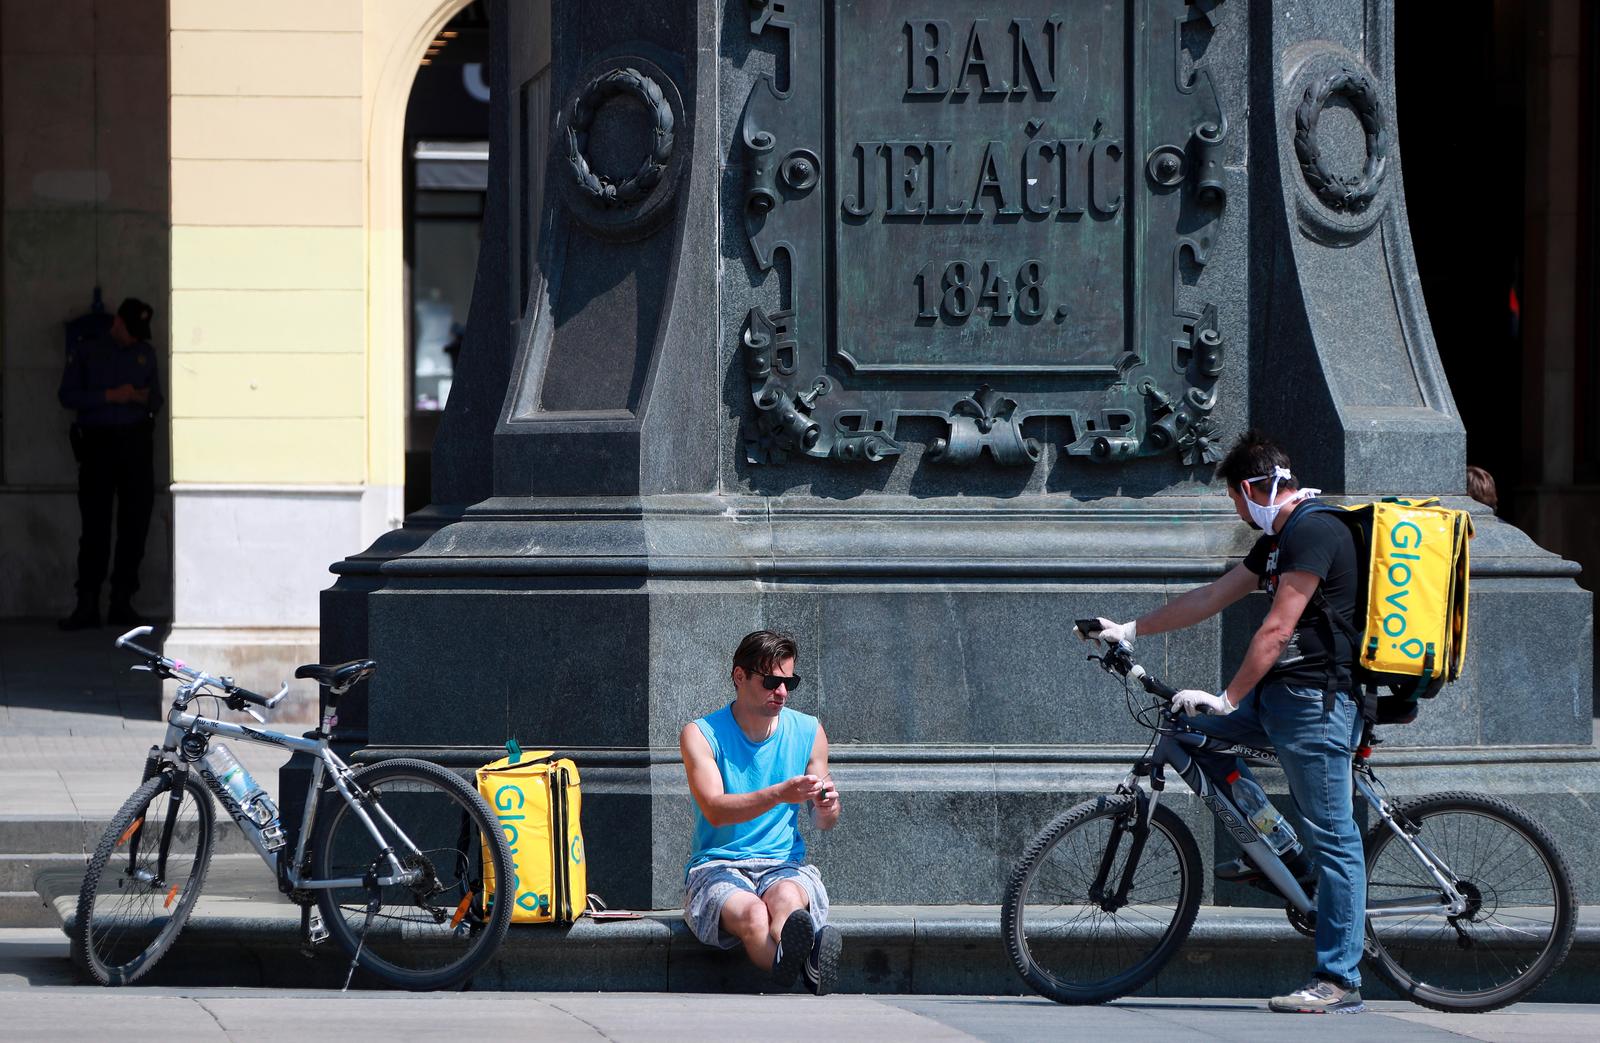 27.04.2020., Zagreb - Srediste grada. Atmosfera u centru grada nakon prve faze popustanja mjera uzrokovane korona virusom. Photo: Sanjin Strukic/PIXSELL